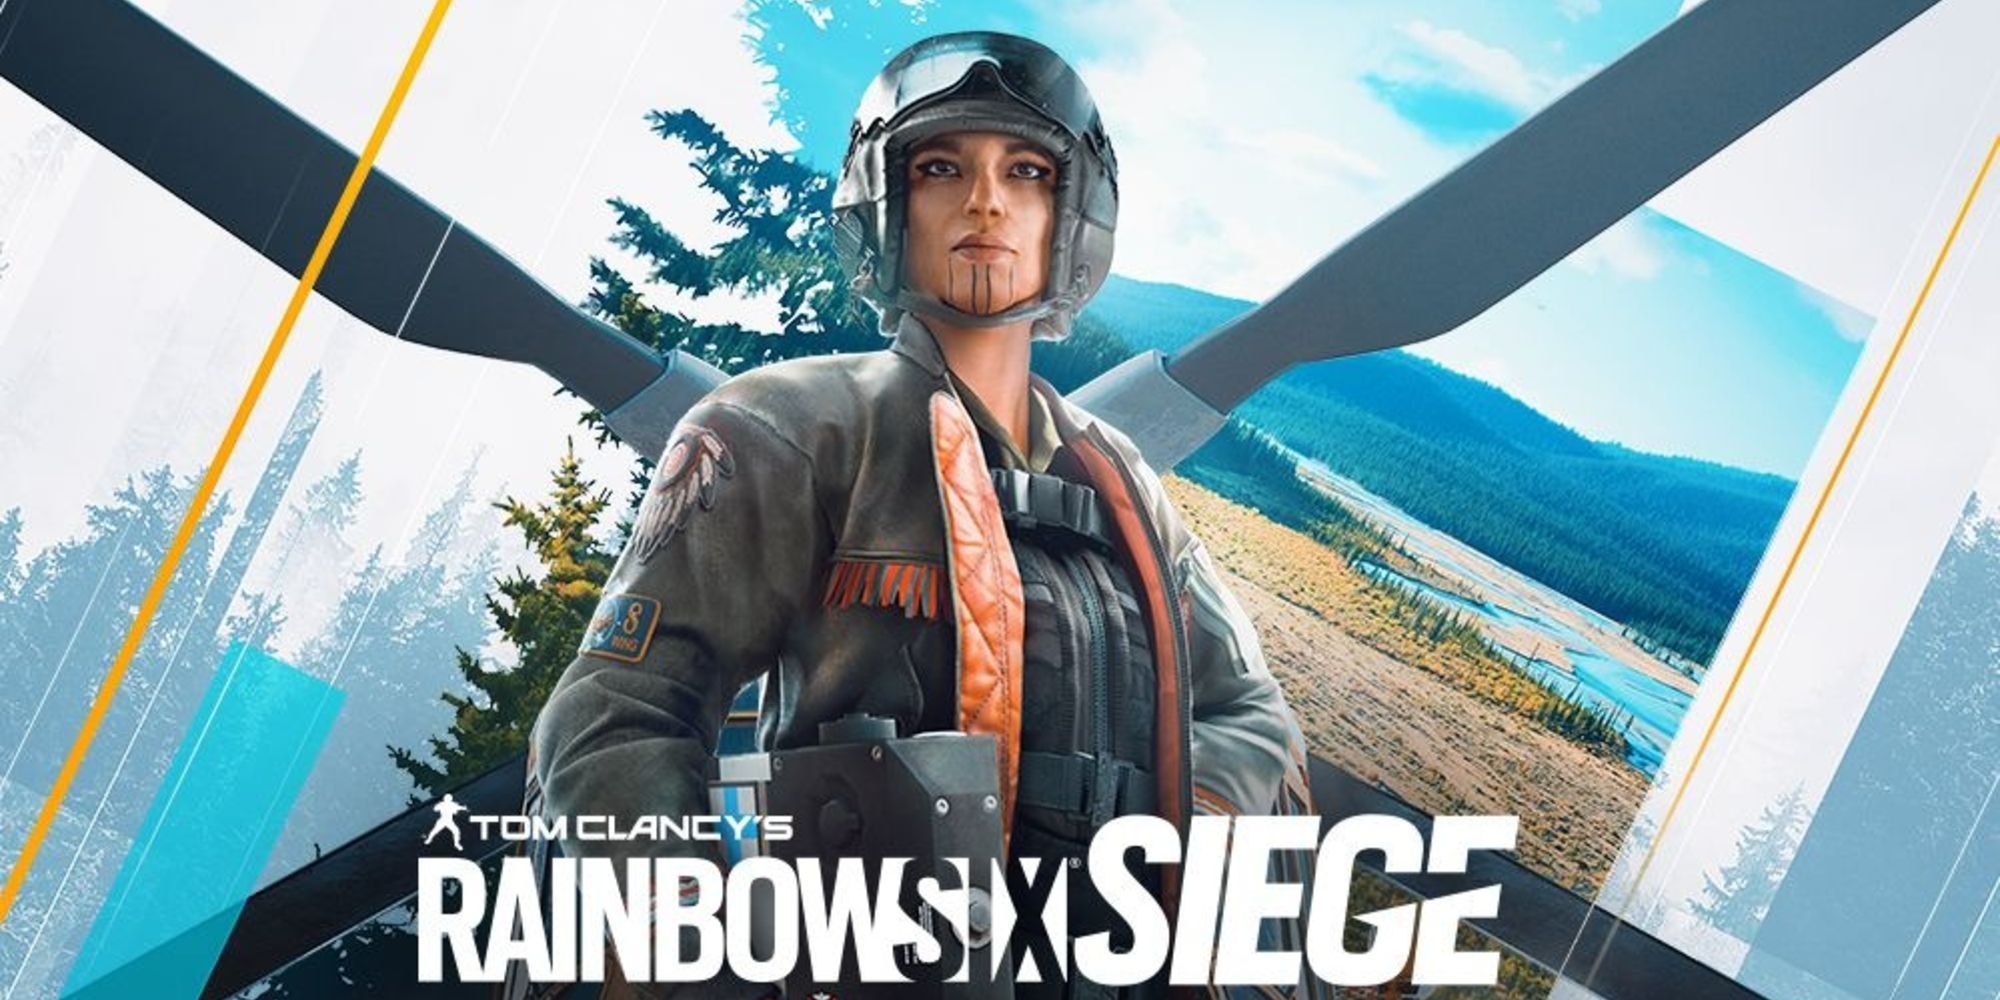 Rainbow Six Siege is finally getting cross-play and cross